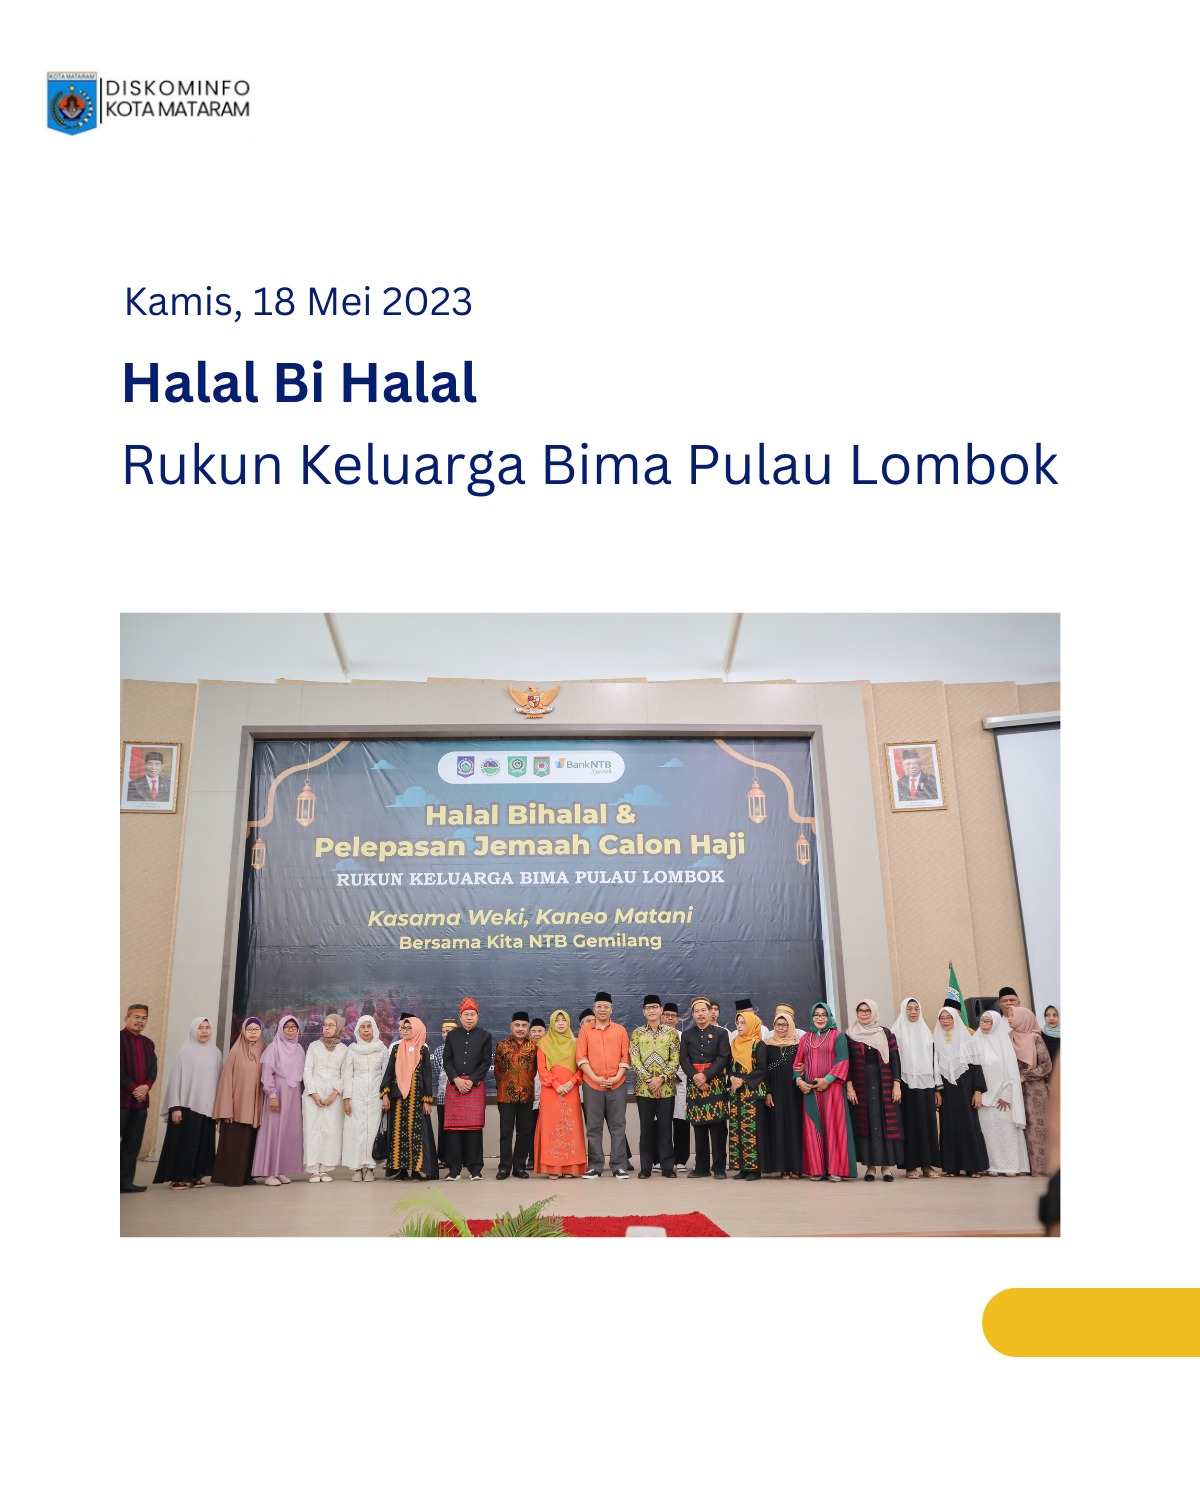 Halal Bi Halal Rukun Keluarga Bima Pulau Lombok